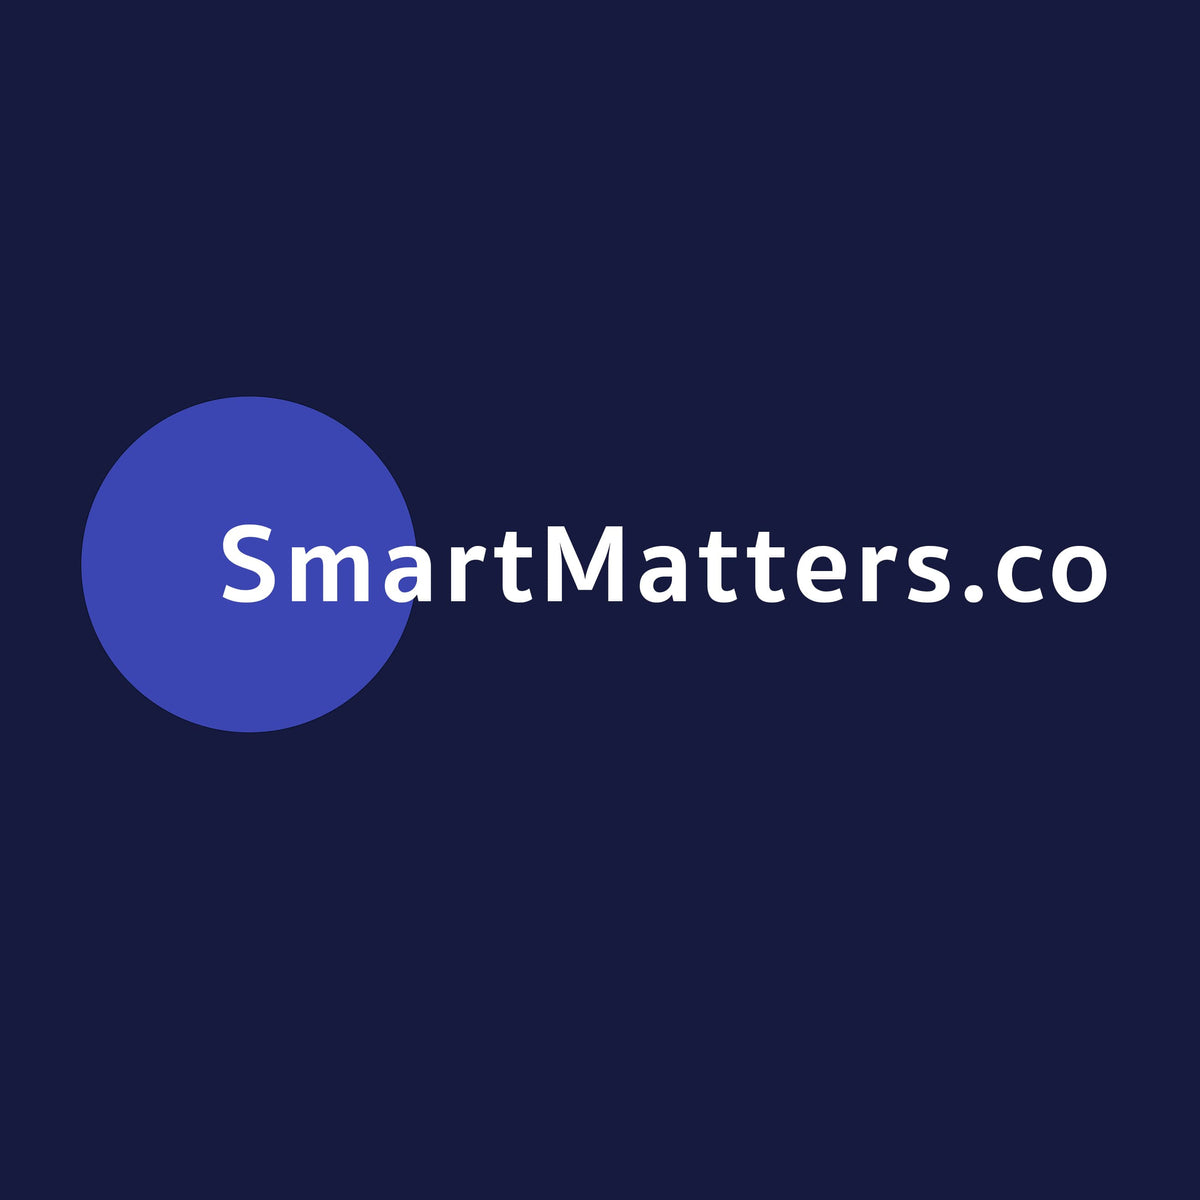 smartmatters.co